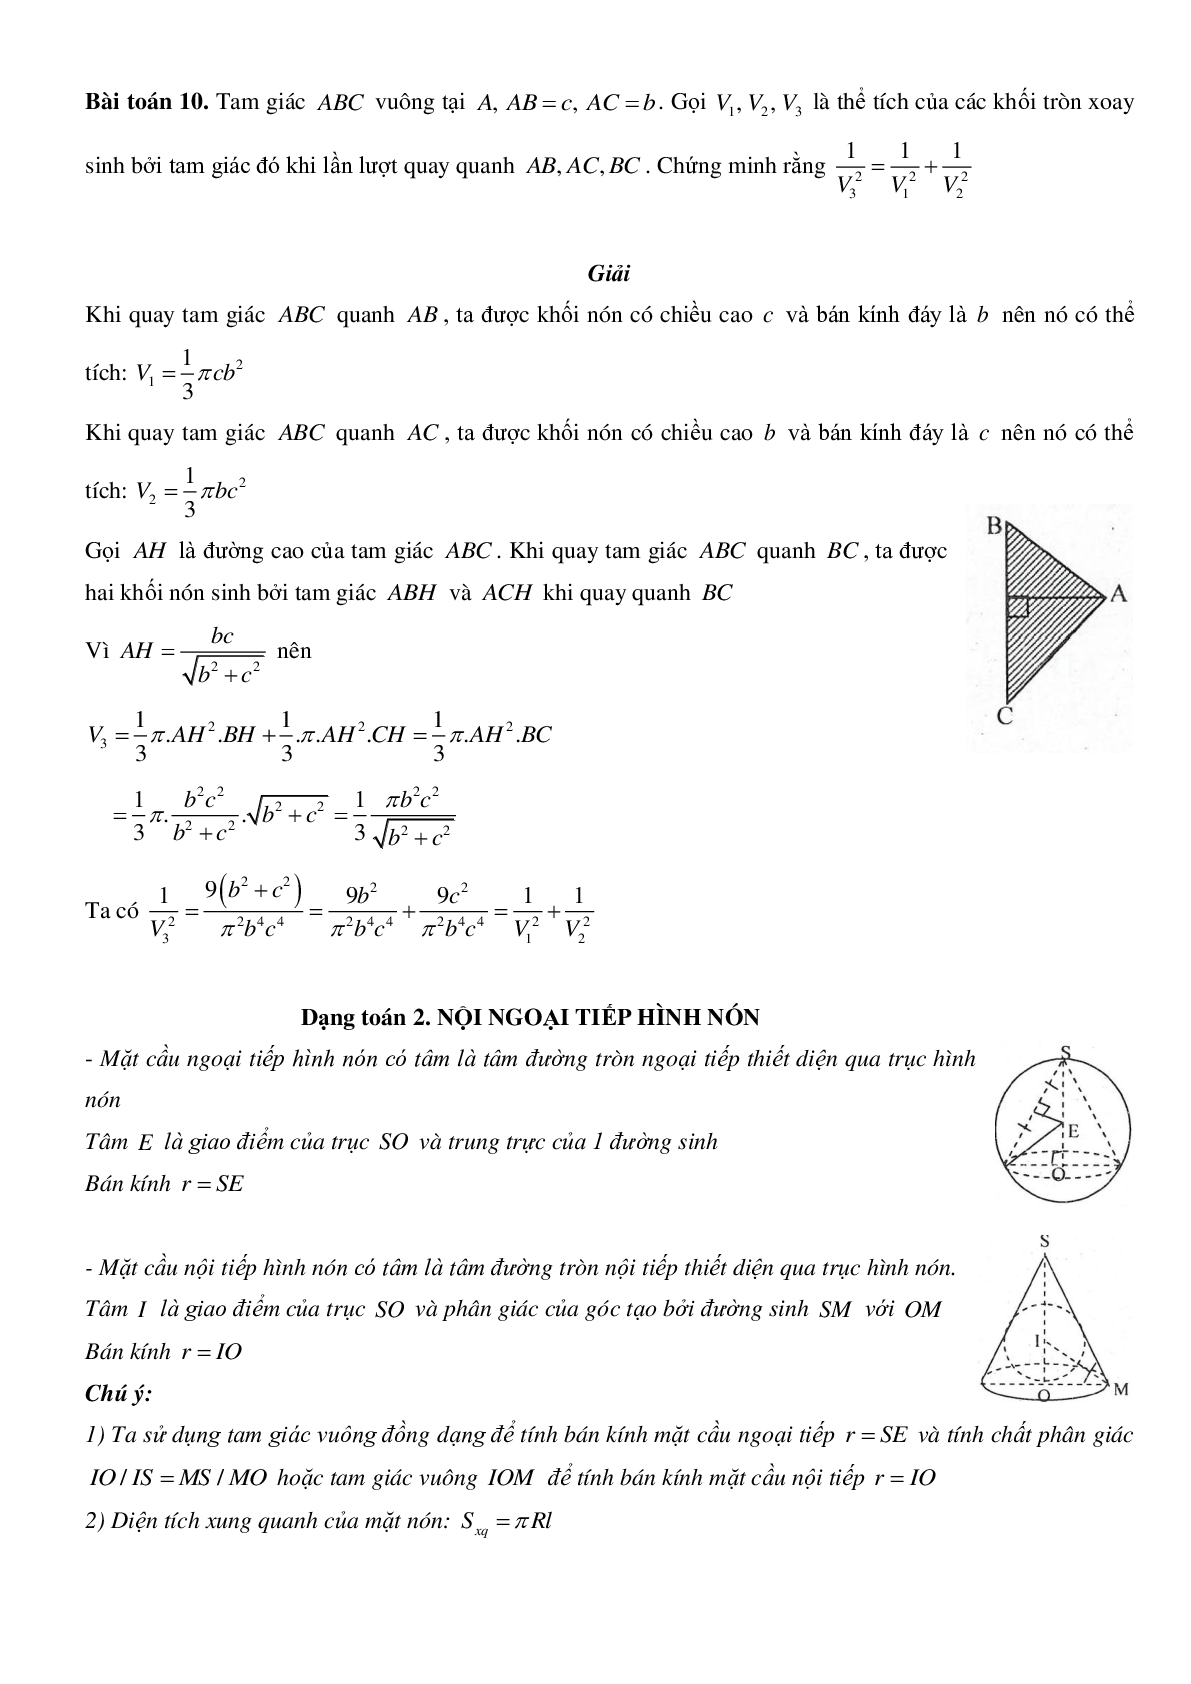 Mặt nón - Hình nón - Khối nón - Ôn thi THPT QG môn toán (trang 6)